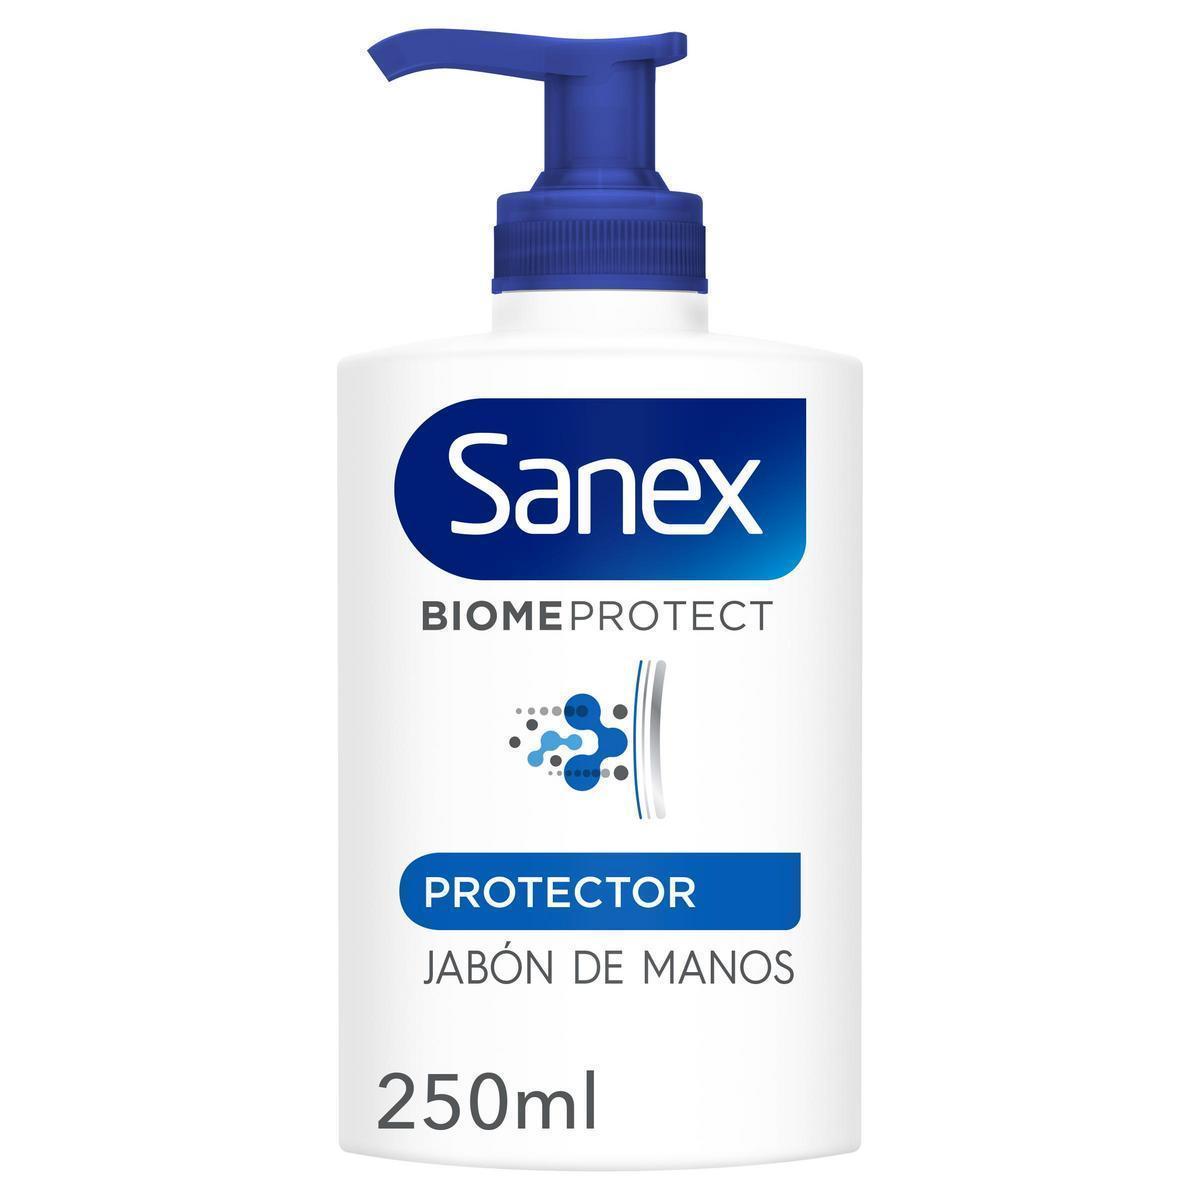 Sanex - Jabón líquido de manos Sanex BiomeProtect Protector 250ml